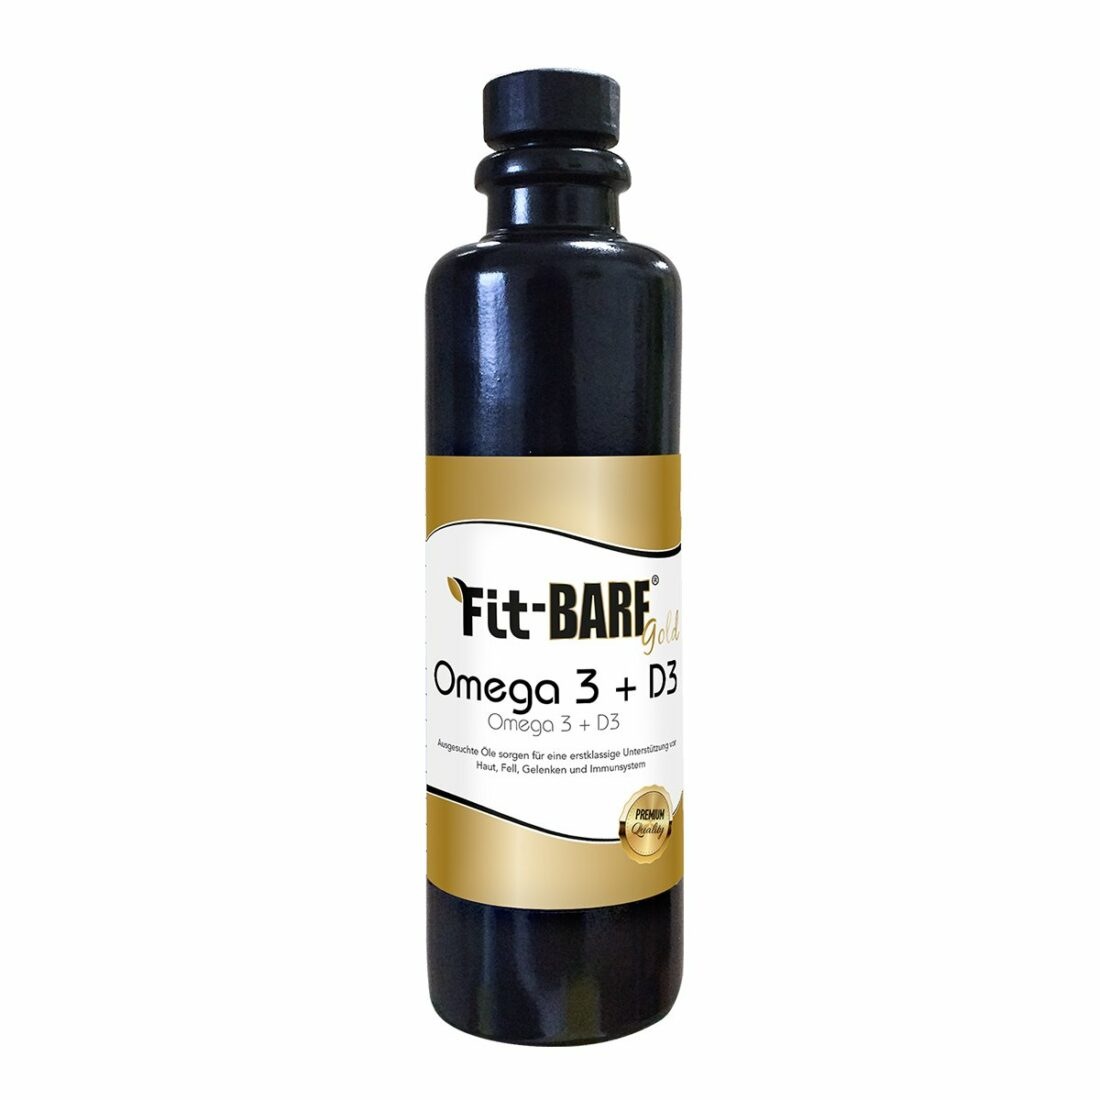 cdVet Fit-BARF Gold omega-3+D3